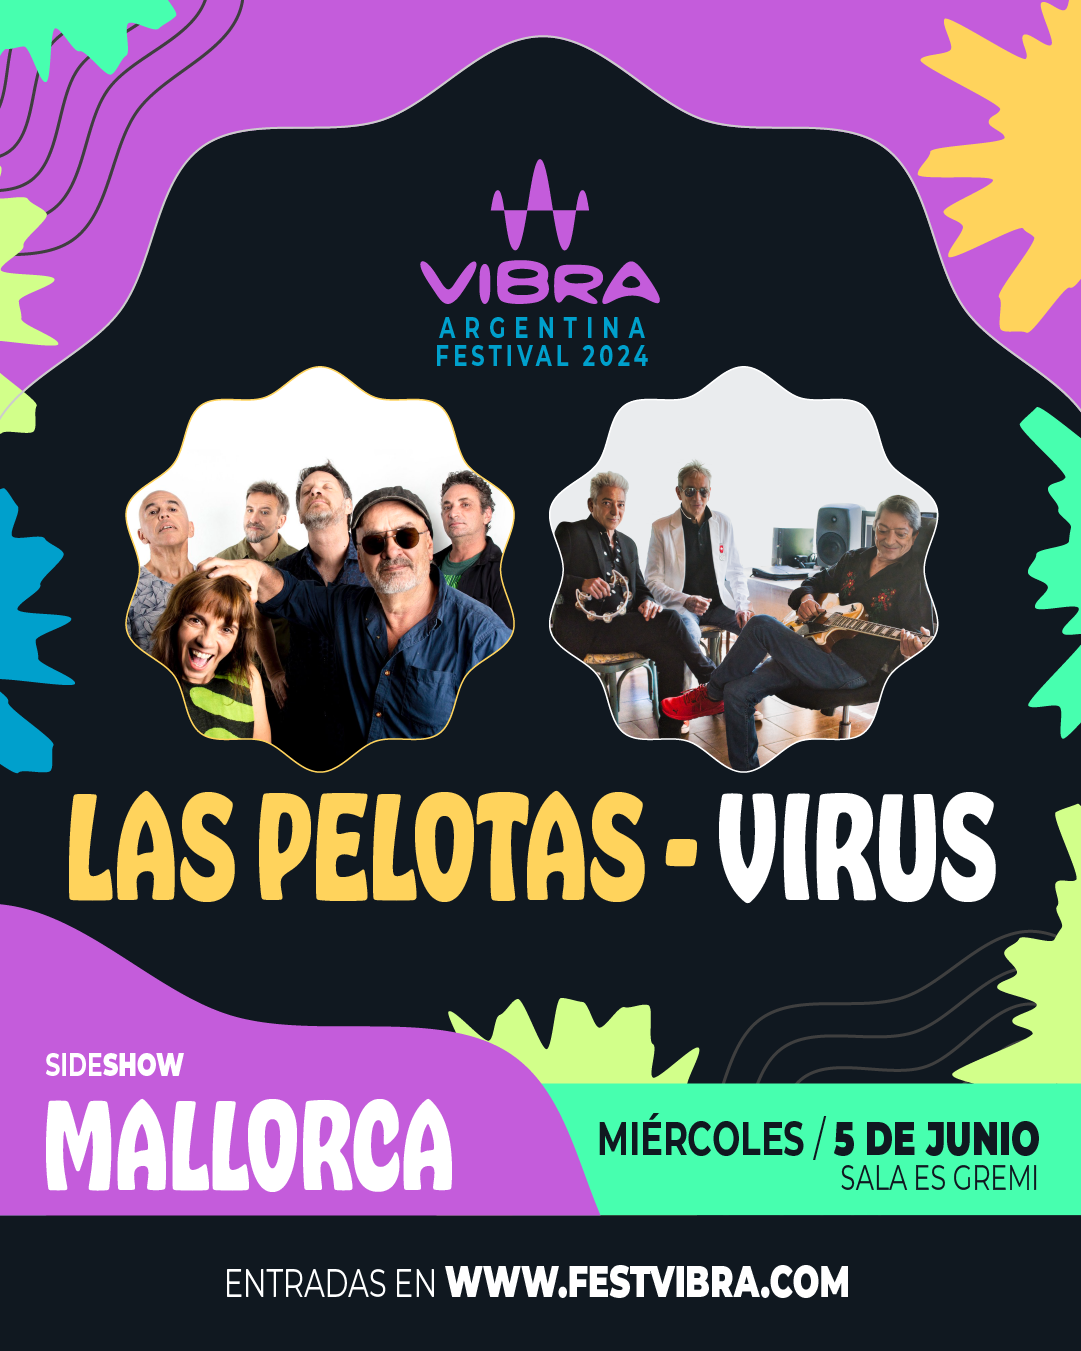 VIBRA ARGENTINA FESTIVAL 2024 en MALLORCA, sala es Gremi,Miercoles 5 de Junio Las Pelotas y Virus. Entradas y Info: www.festvibra.com